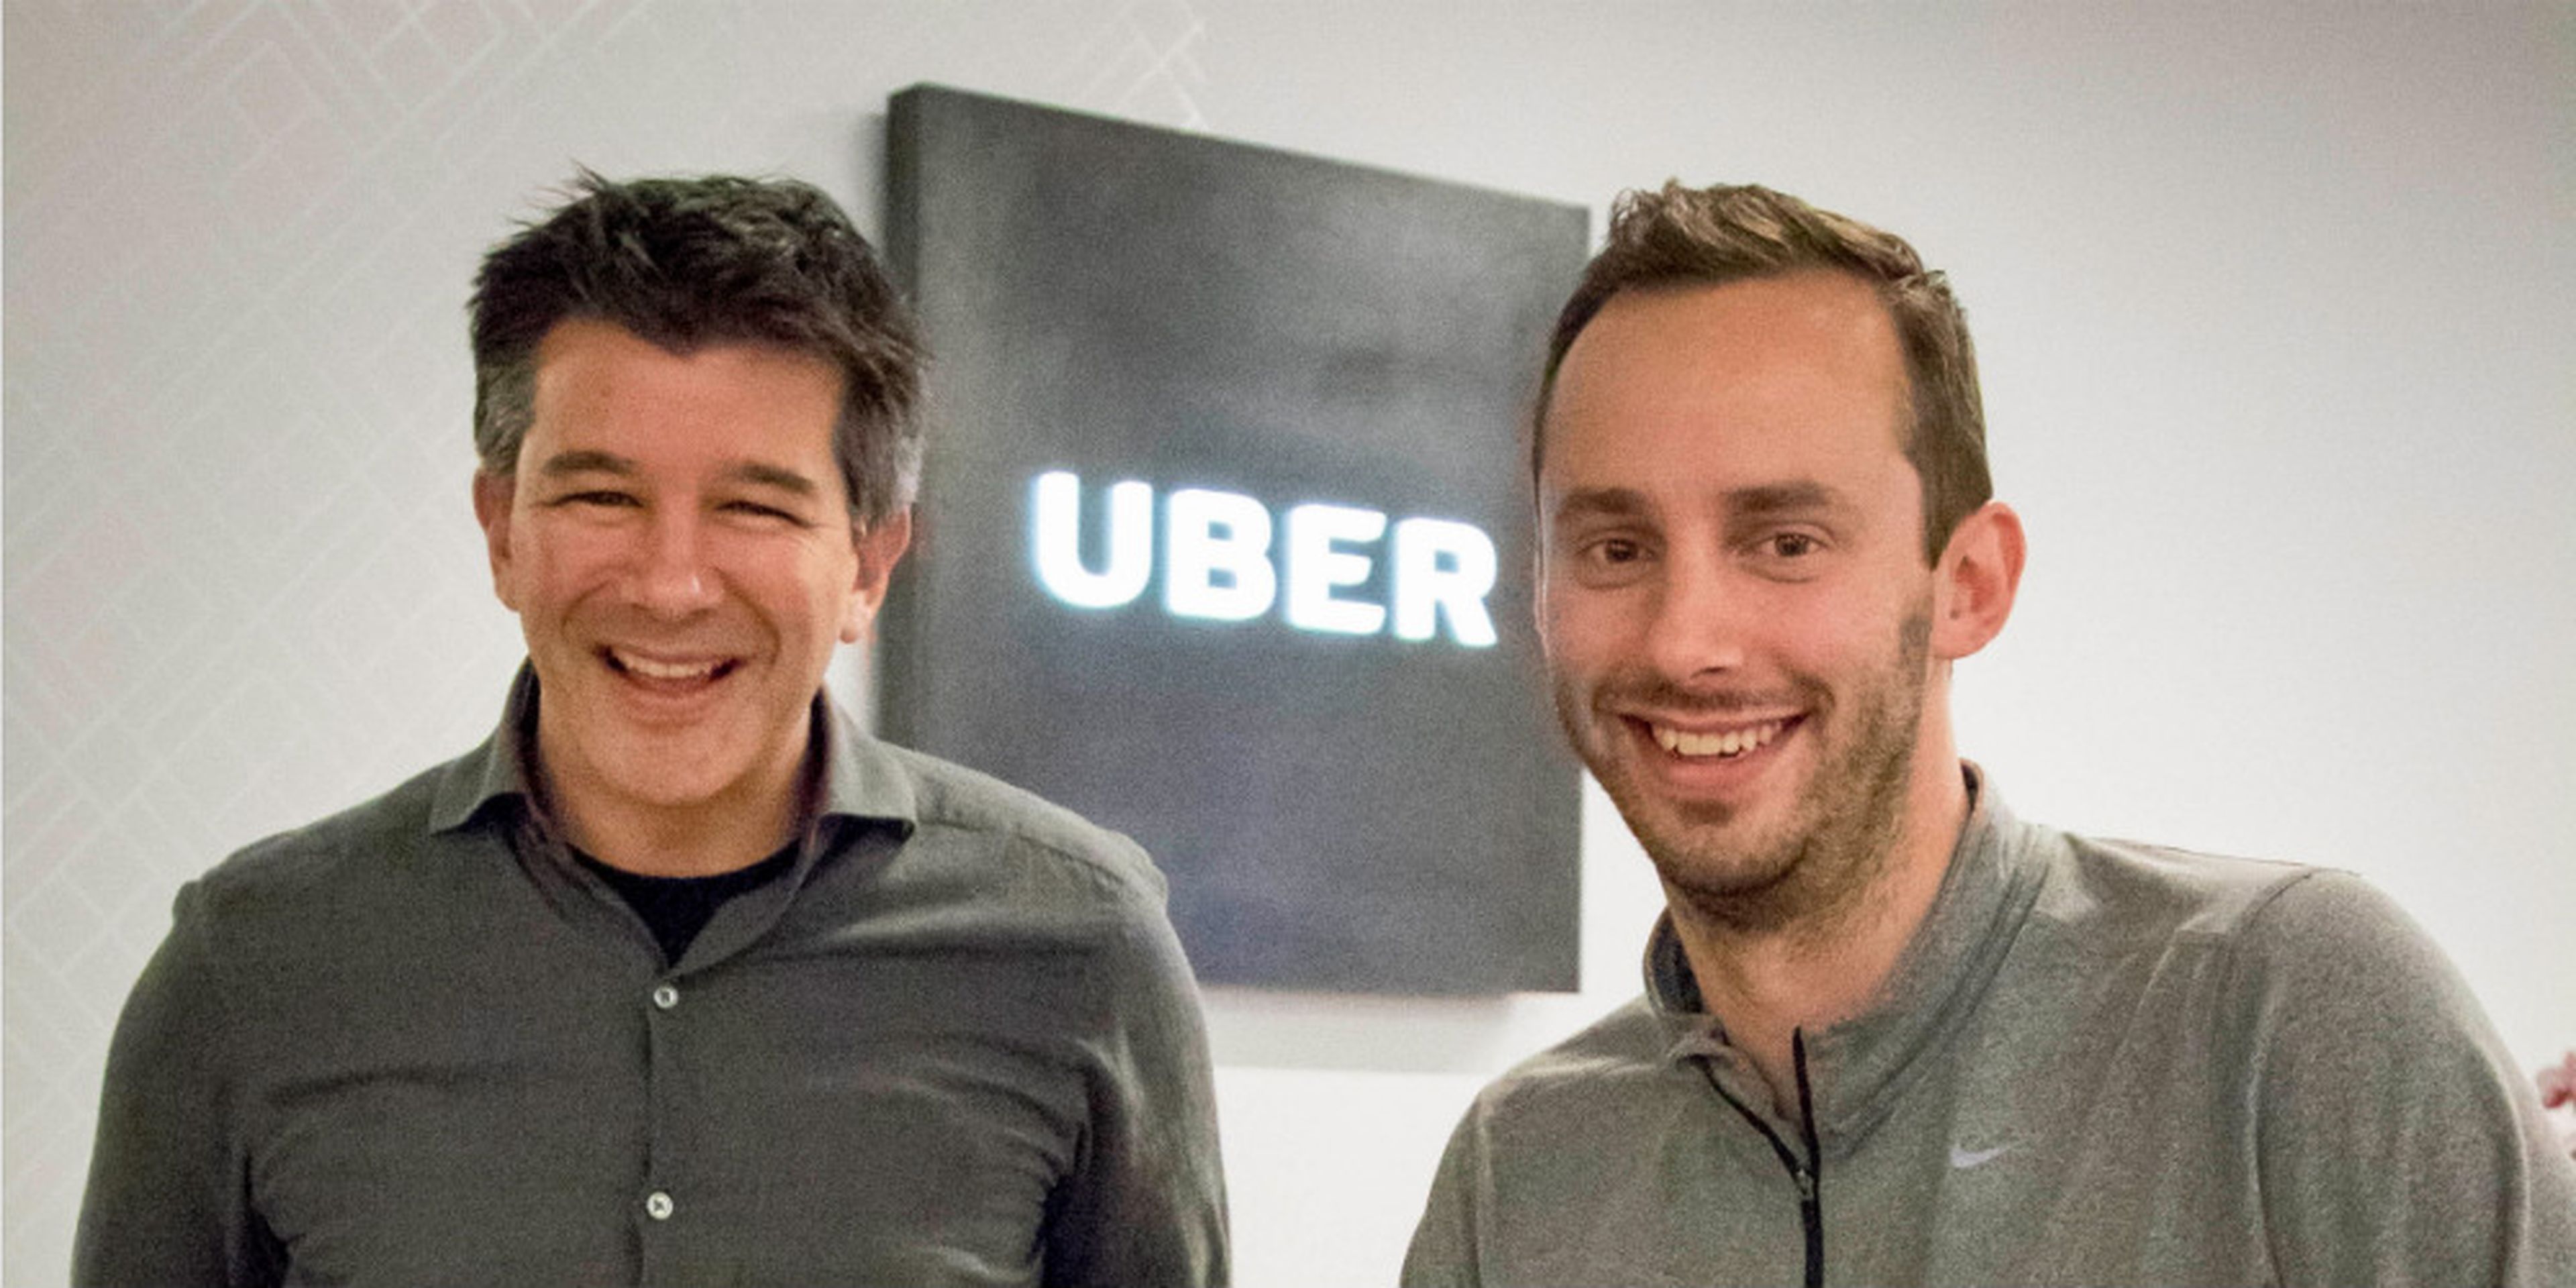 De izqd. a der., el fundador y ex CEO de Uber, Travis Kalanick, y el antiguo empleado Anthony Levandowski, pieza central del juicio.